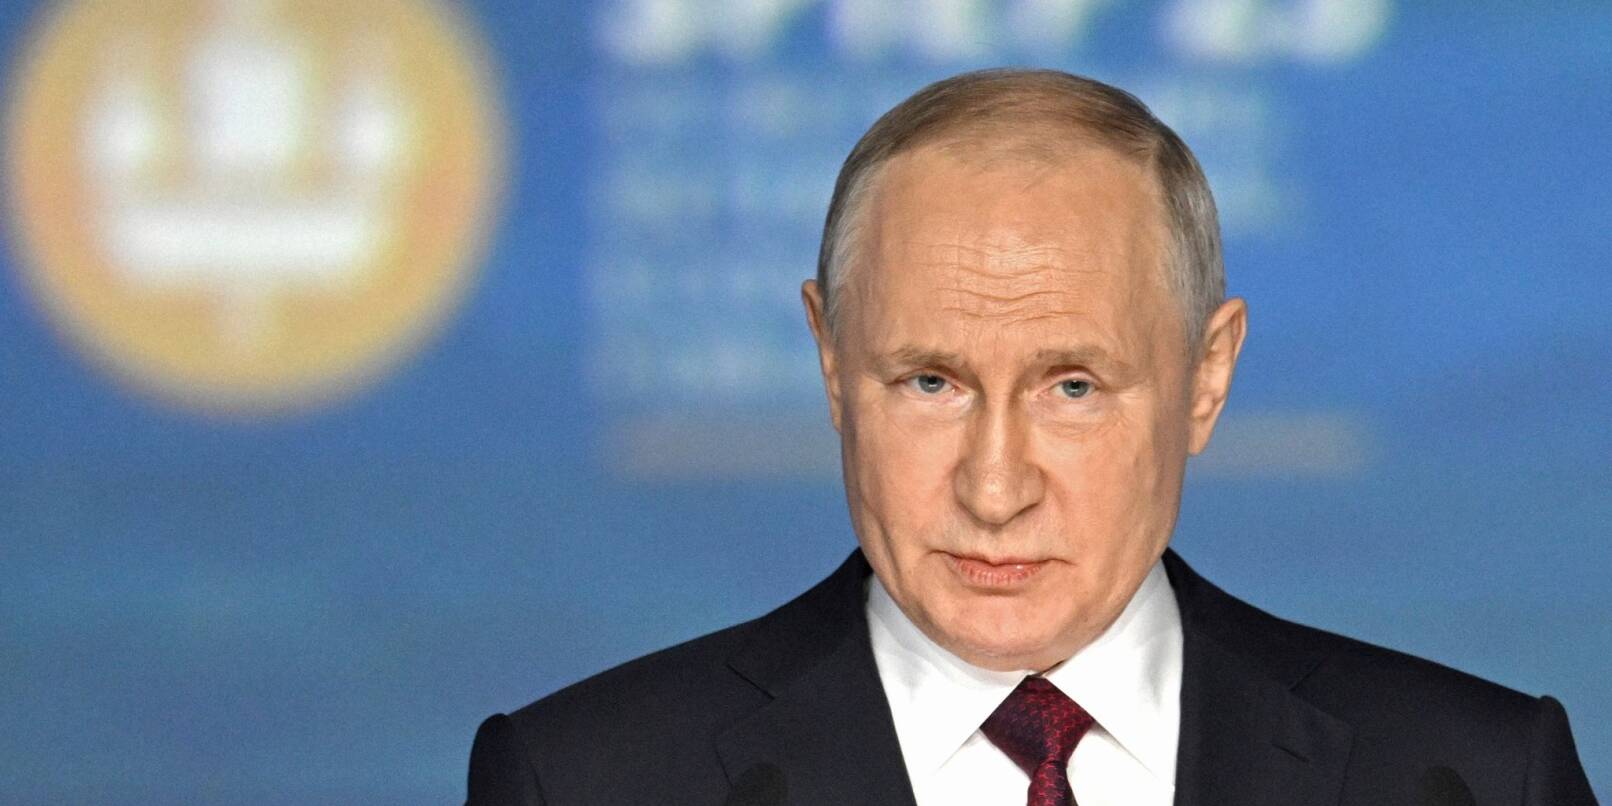 Russlands Präsident Wladimir Putin spricht auf dem Petersburger Wirtschaftsforum.